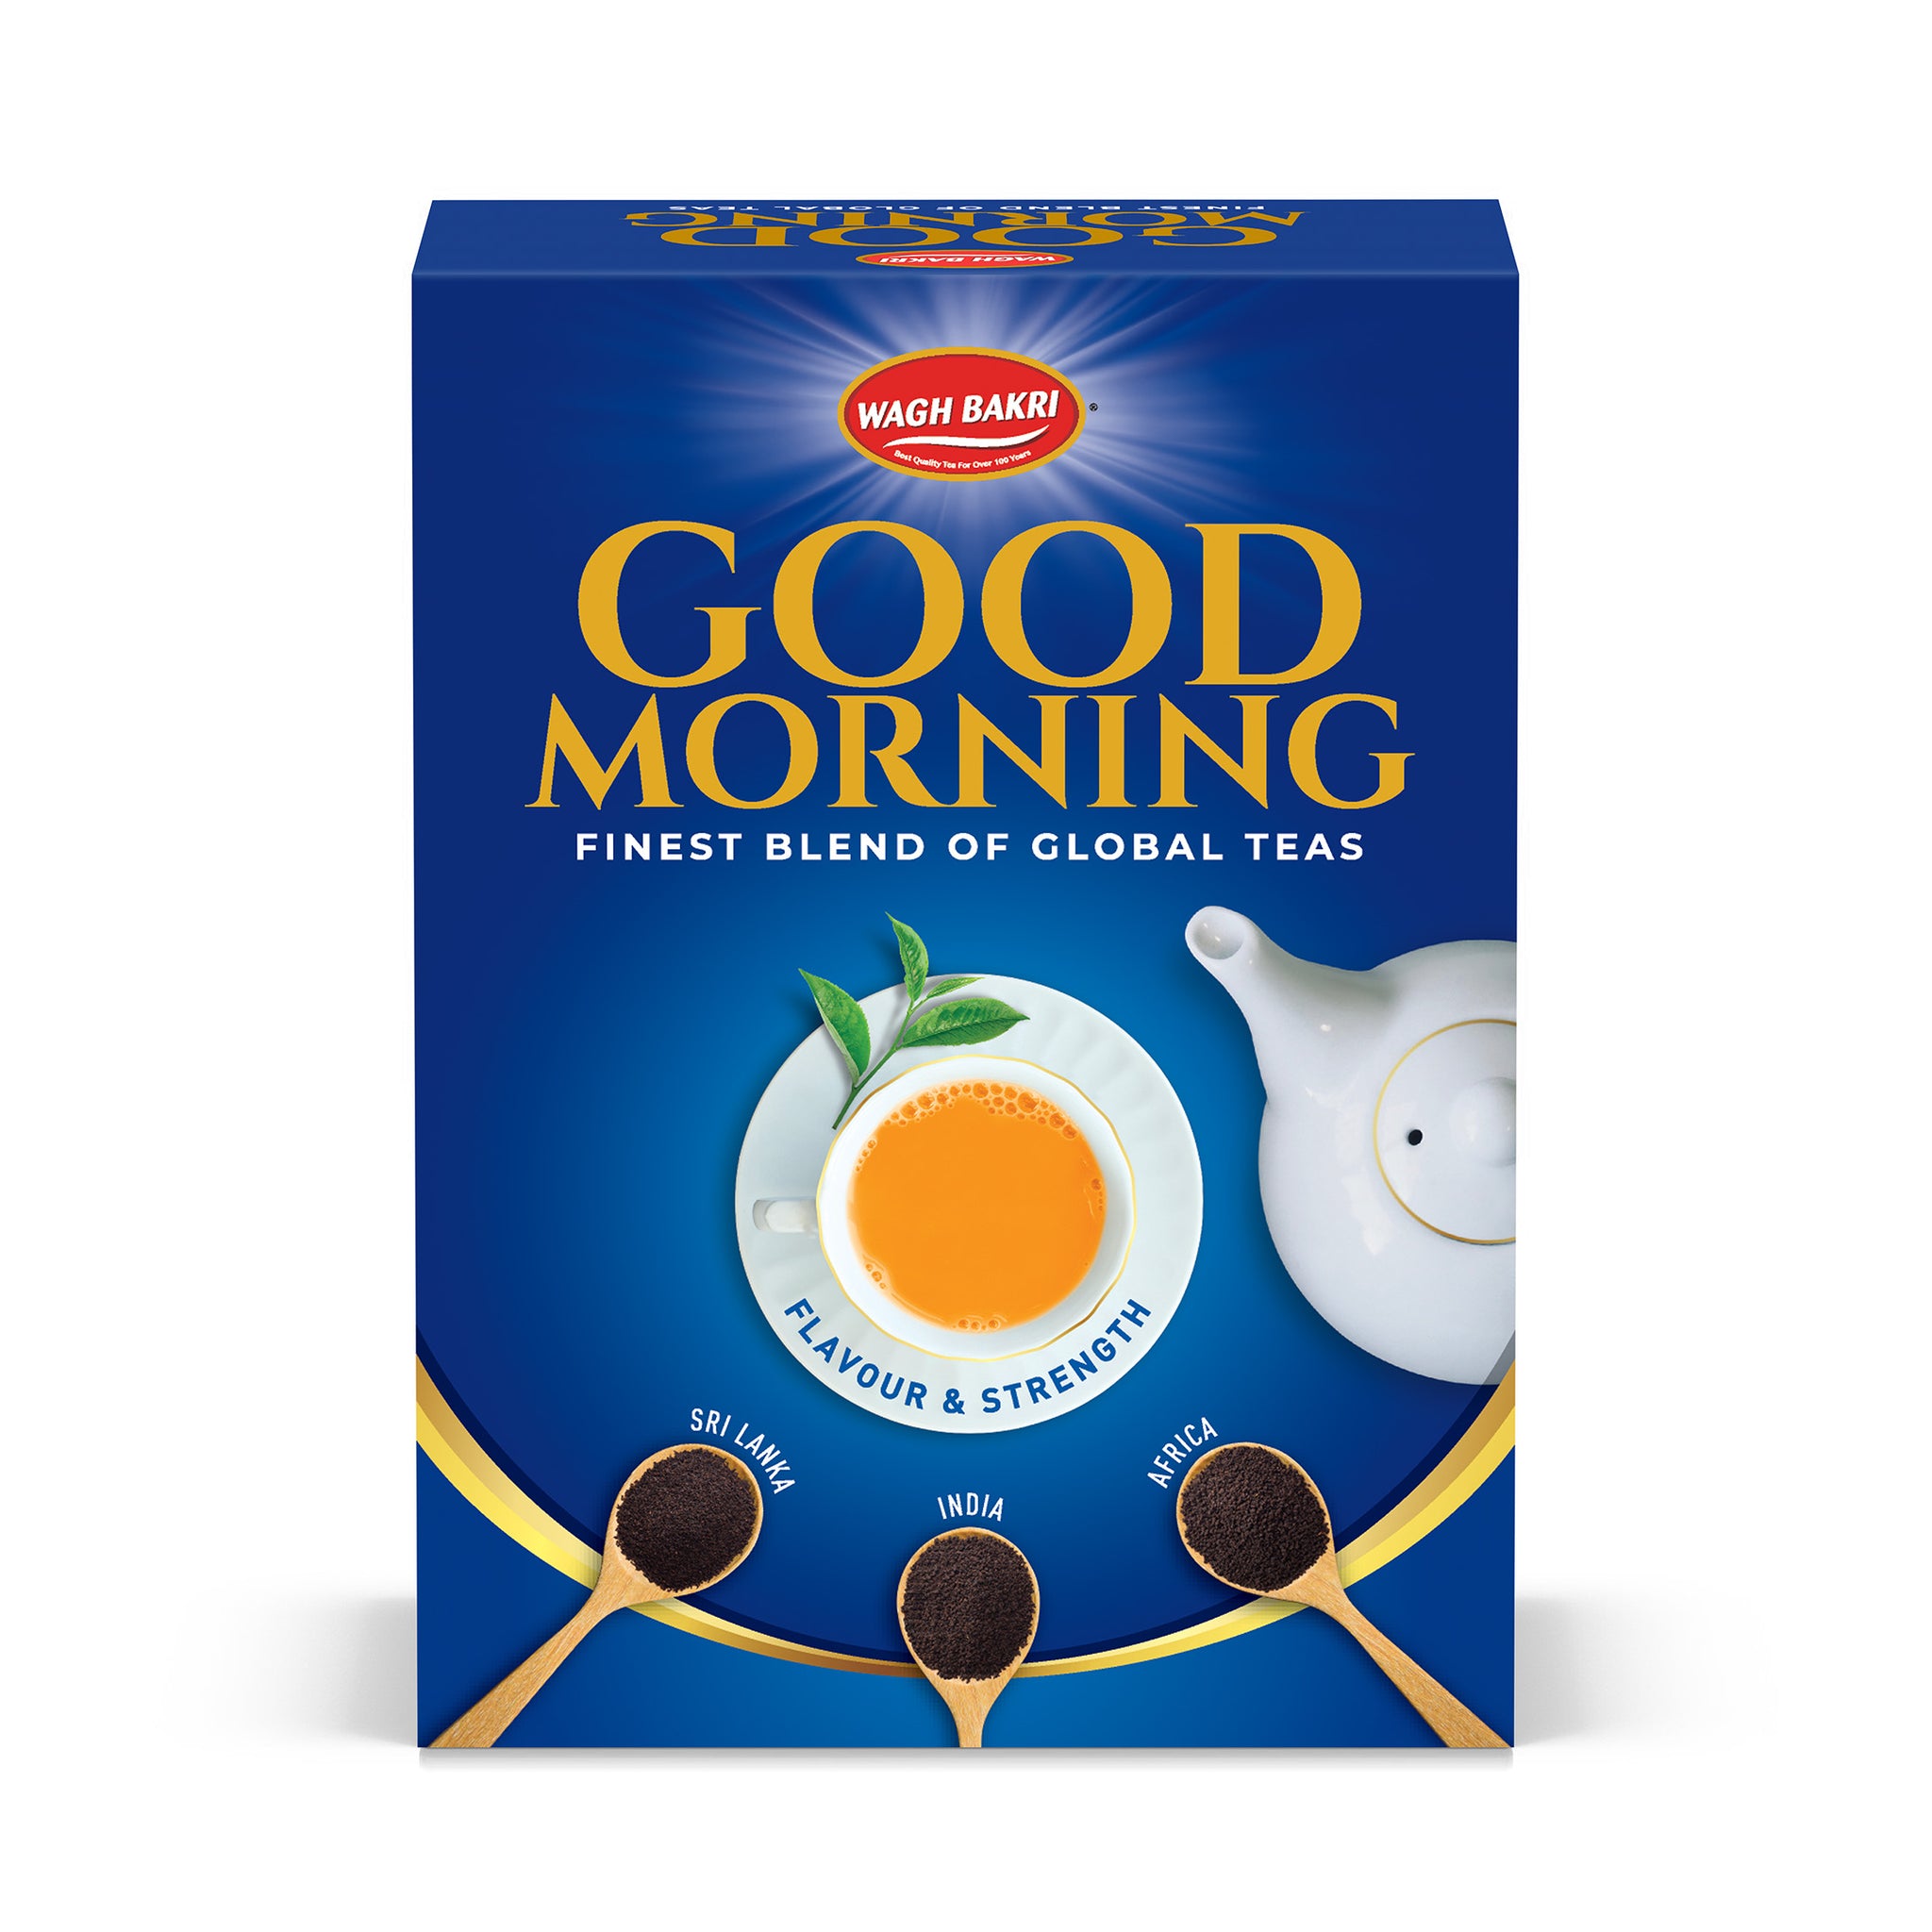 Good Morning Premium Tea